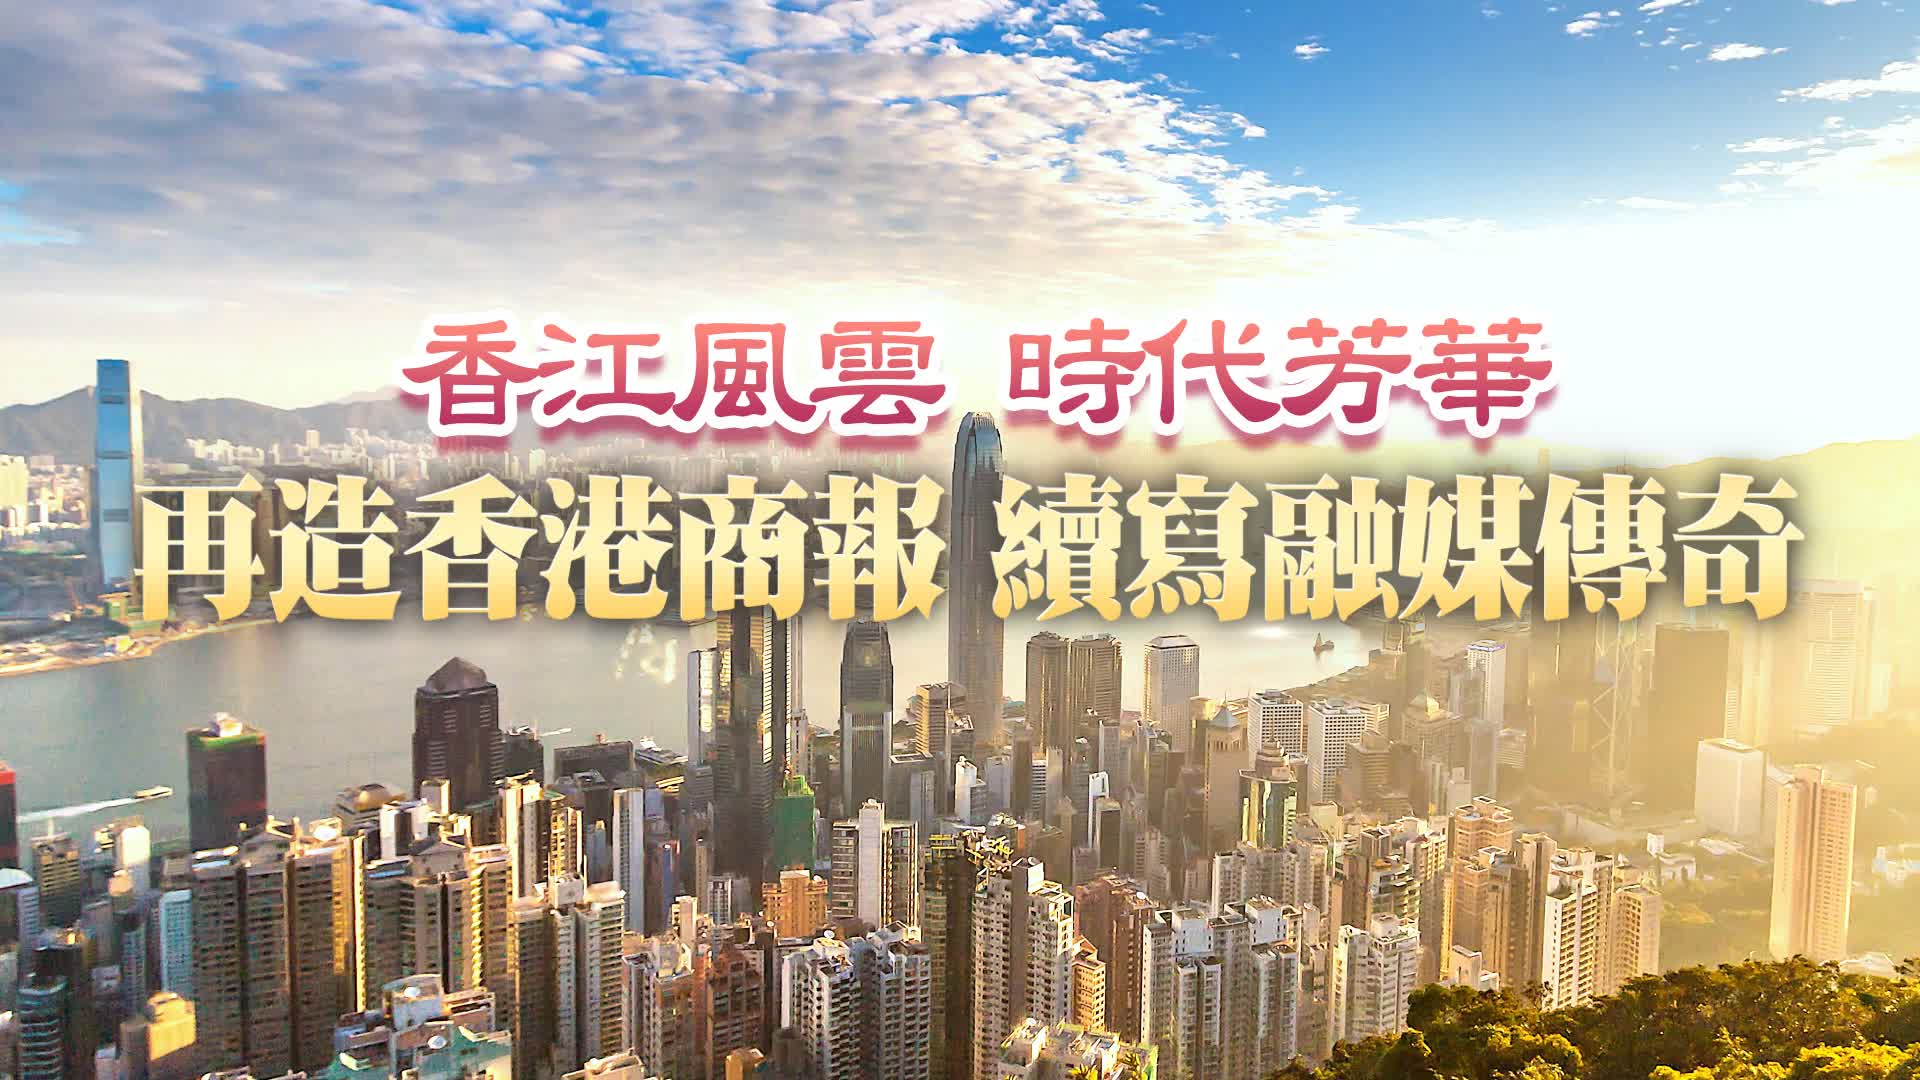 有片丨香港商報2023主題宣傳片粵語版首發 再造香港商報 續寫融媒傳奇